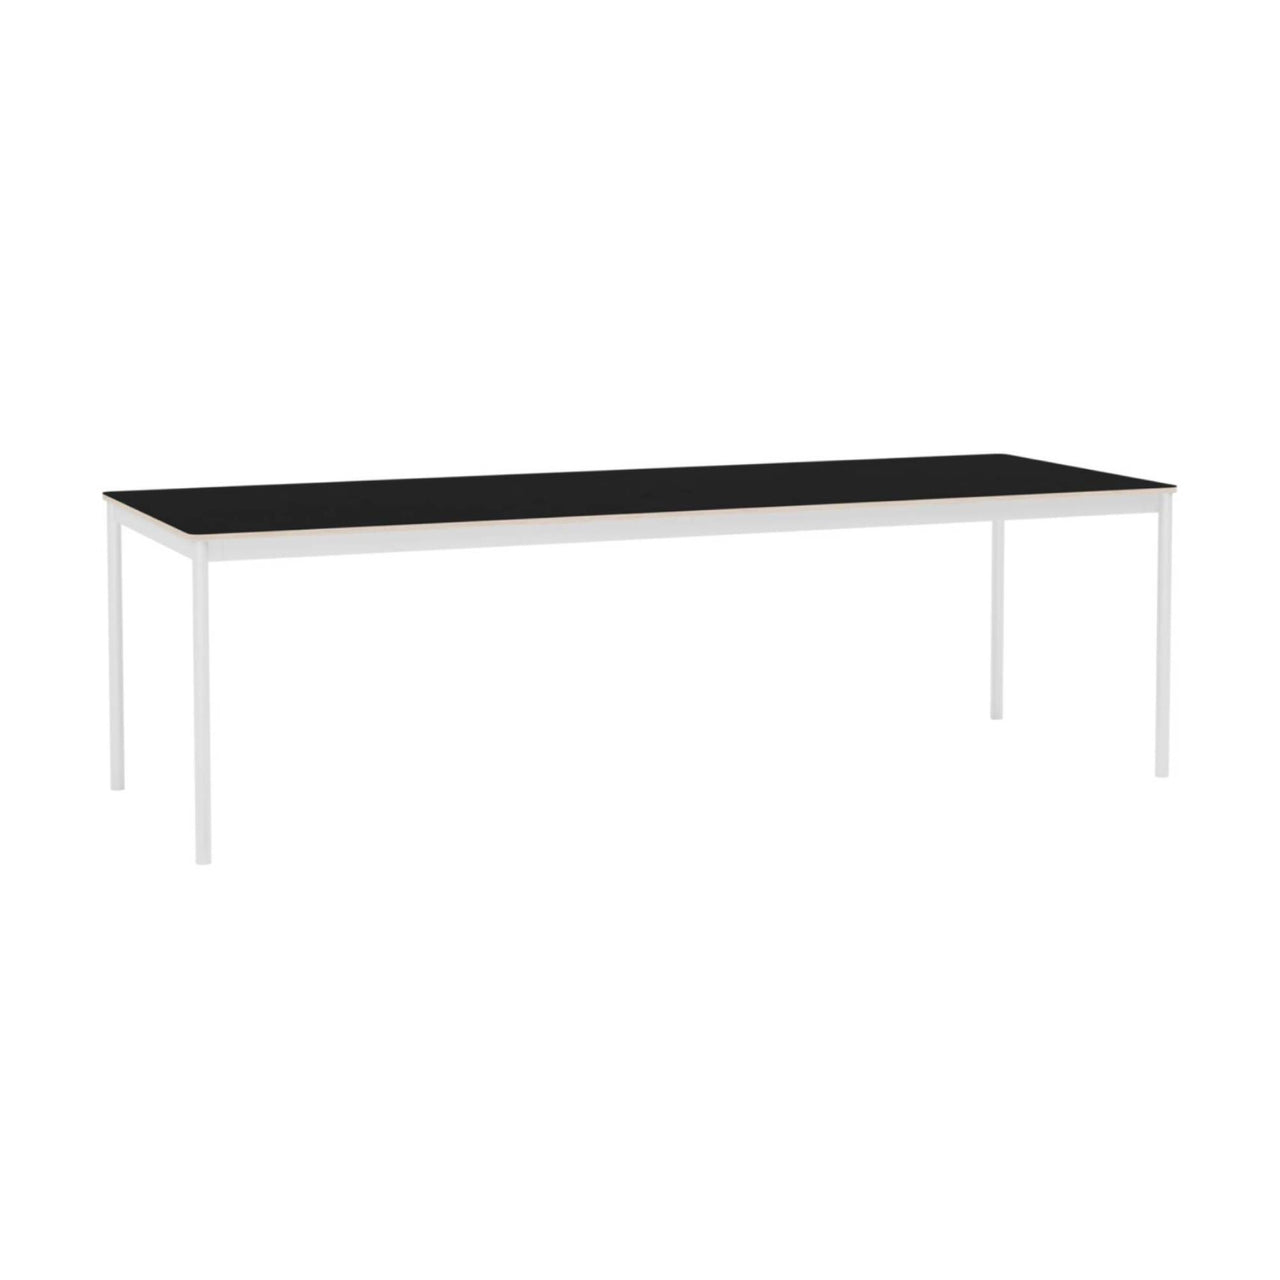 Base Table: Large + Black Laminate + Plywood Edge + White